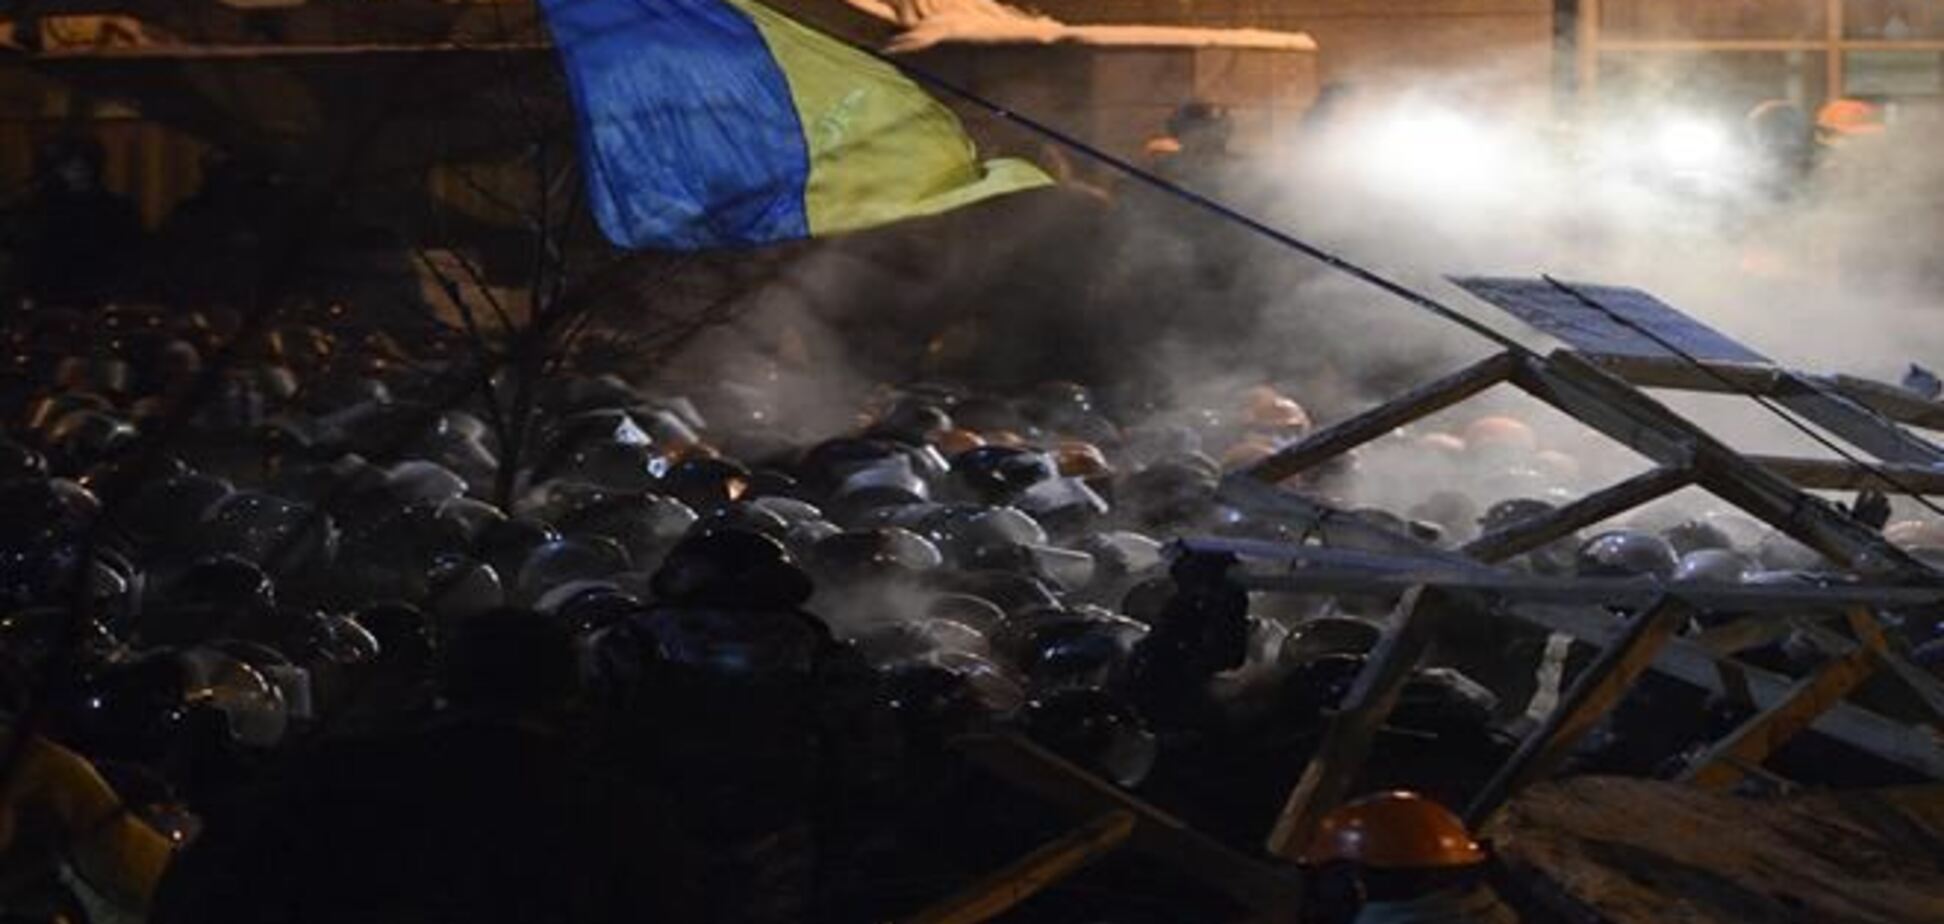  Українці проти розгону Майдану і введення надзвичайного стану - Опитування